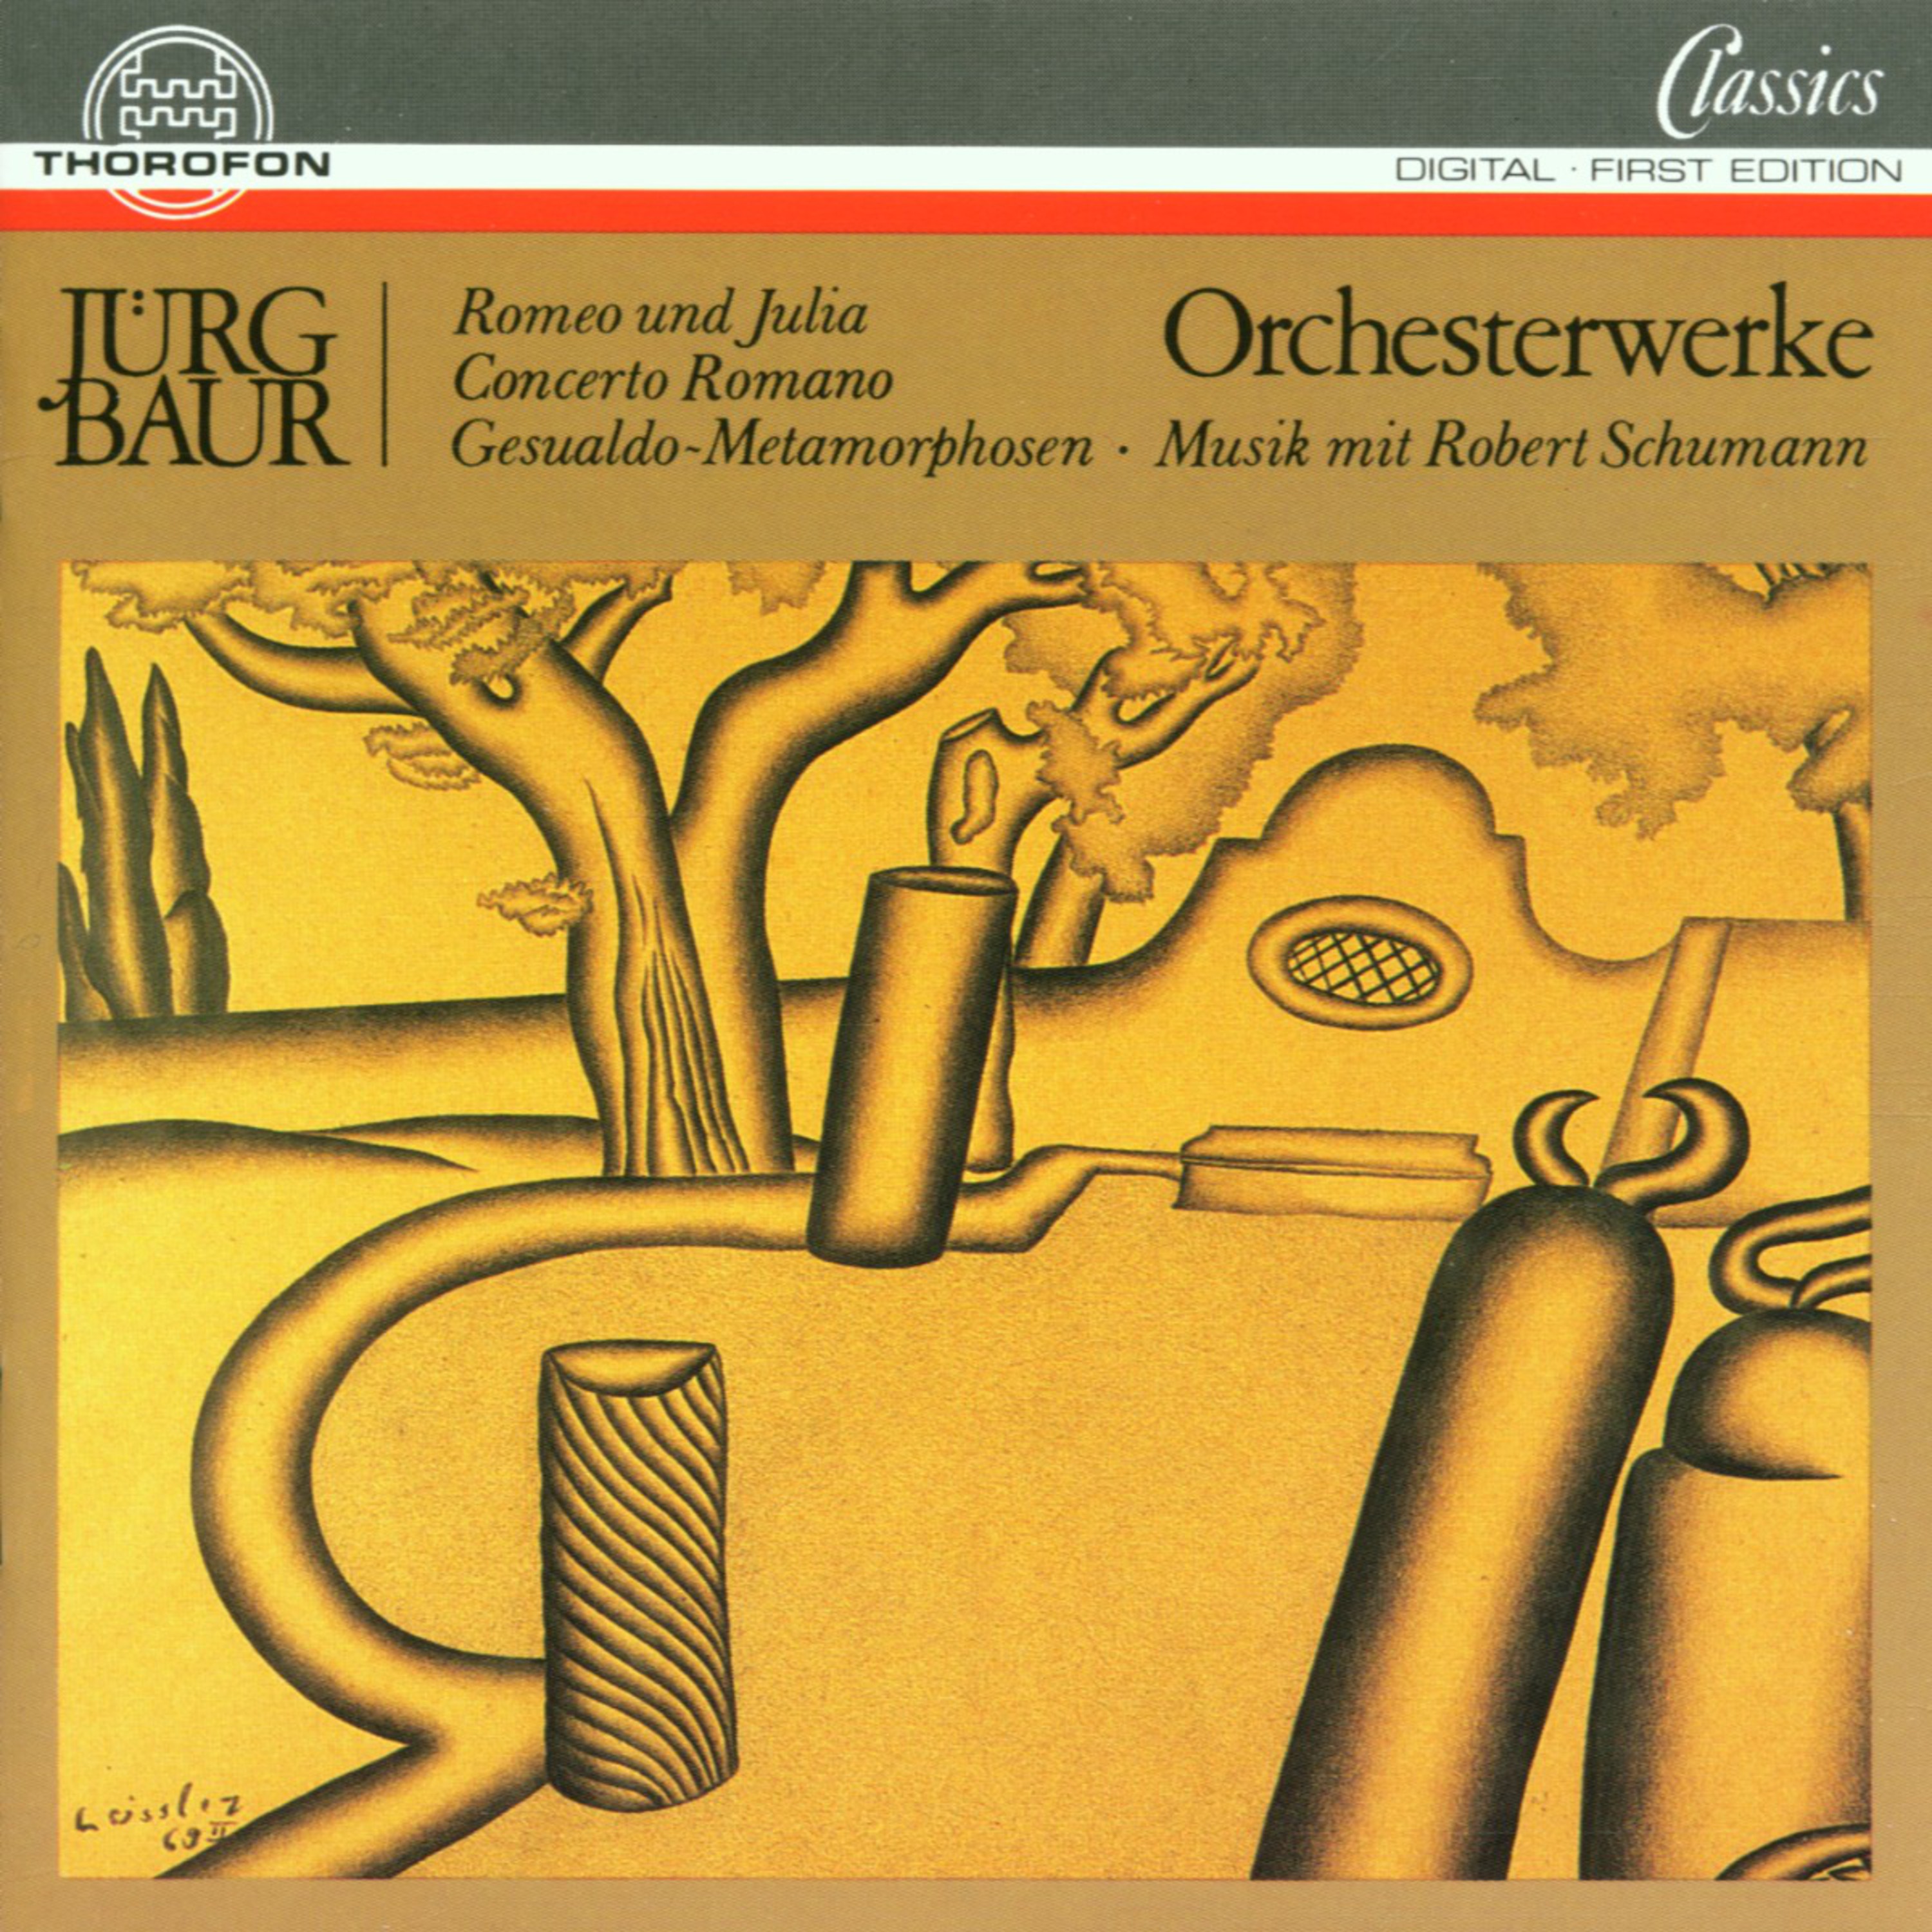 Concerto Romano fü r Oboe und Orchester: I. Mosaik